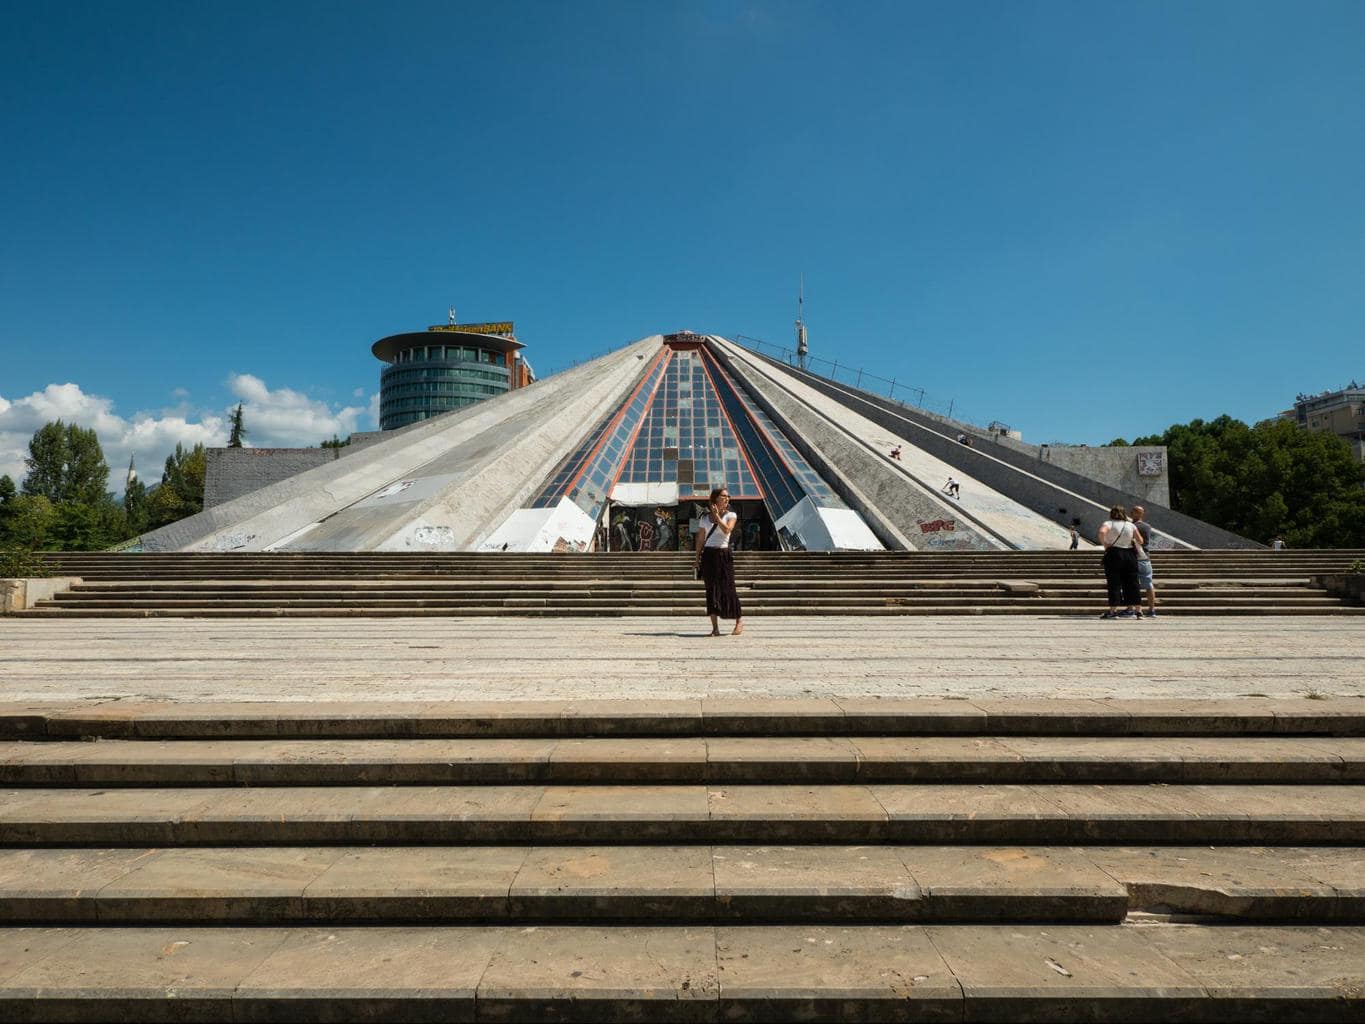 Tirana’s Pyramid